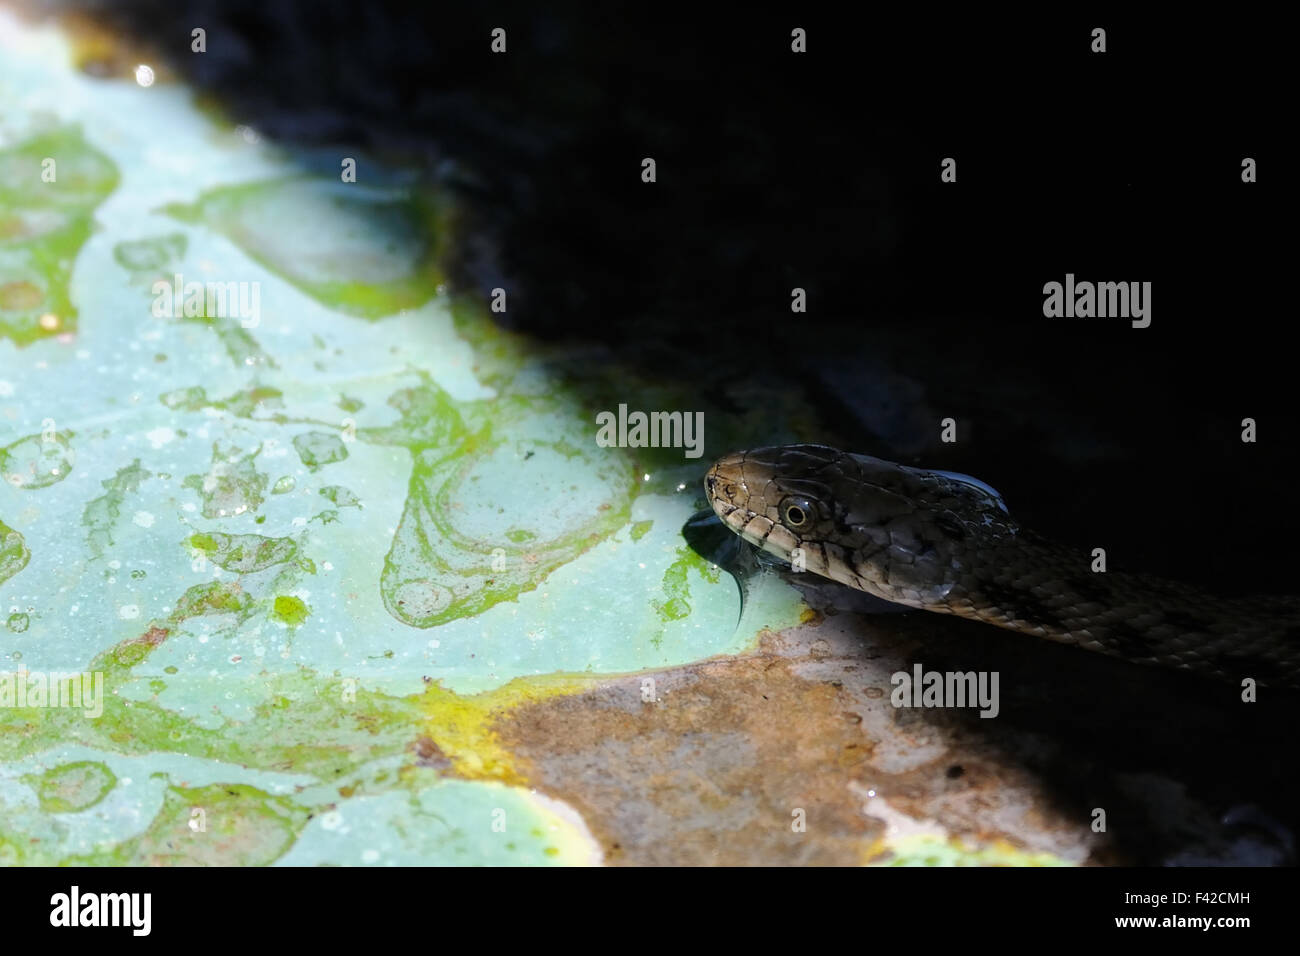 Dice snake  on lotus leaf. Stock Photo